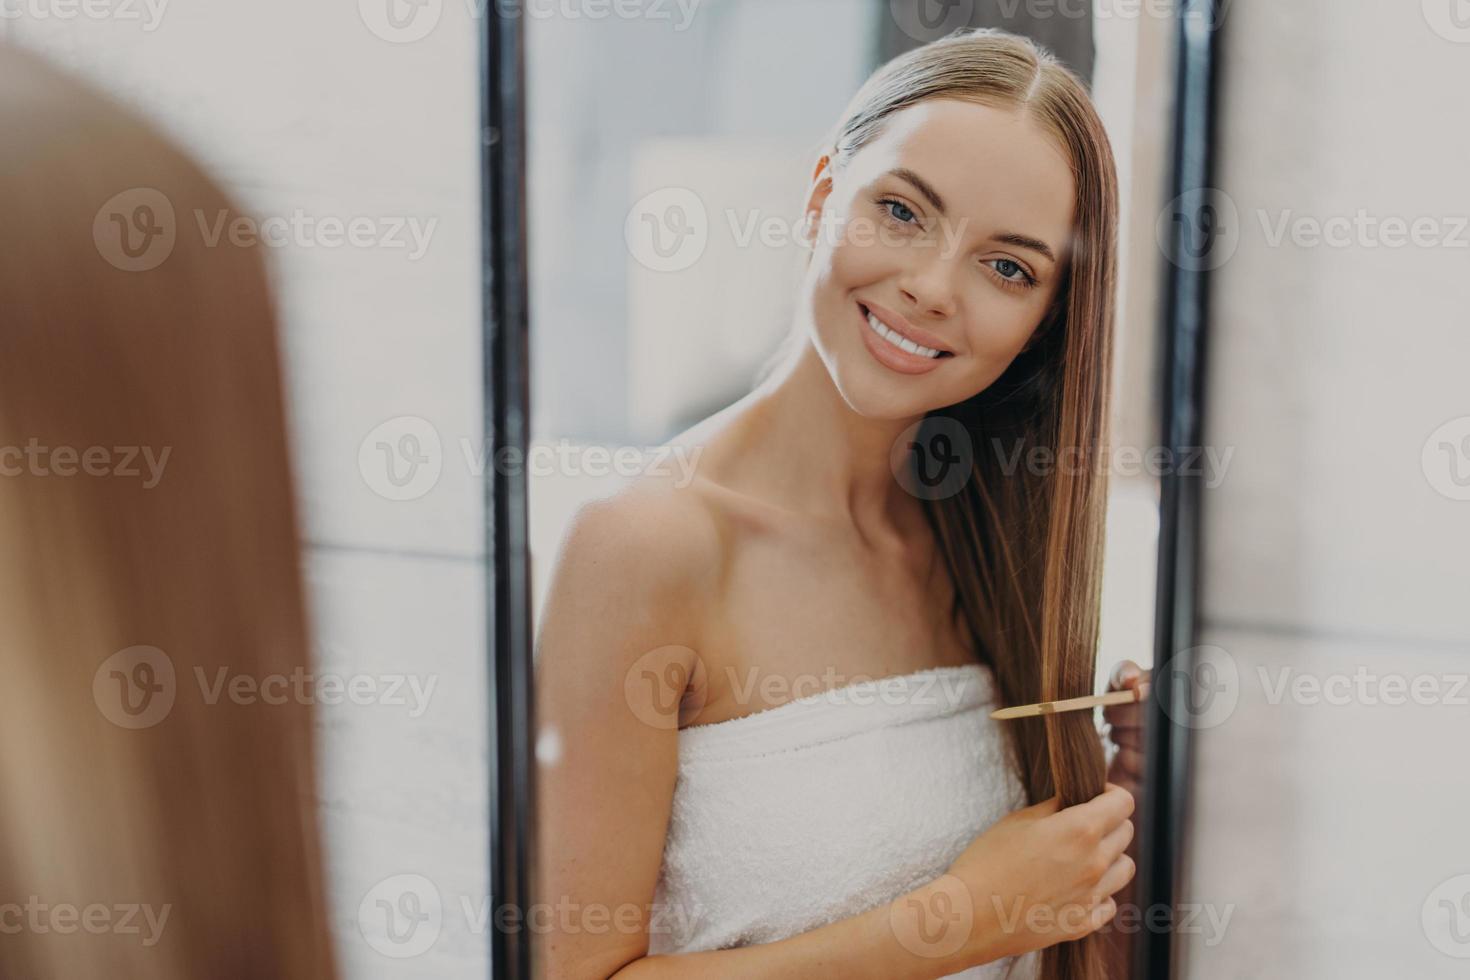 felice e bella giovane donna guarda il suo riflesso nello specchio, ha i capelli lunghi ben curati, usa la spazzola per capelli, avvolta in un asciugamano da bagno, fa l'acconciatura. concetto di donne, bellezza, acconciatura e cura di sé foto